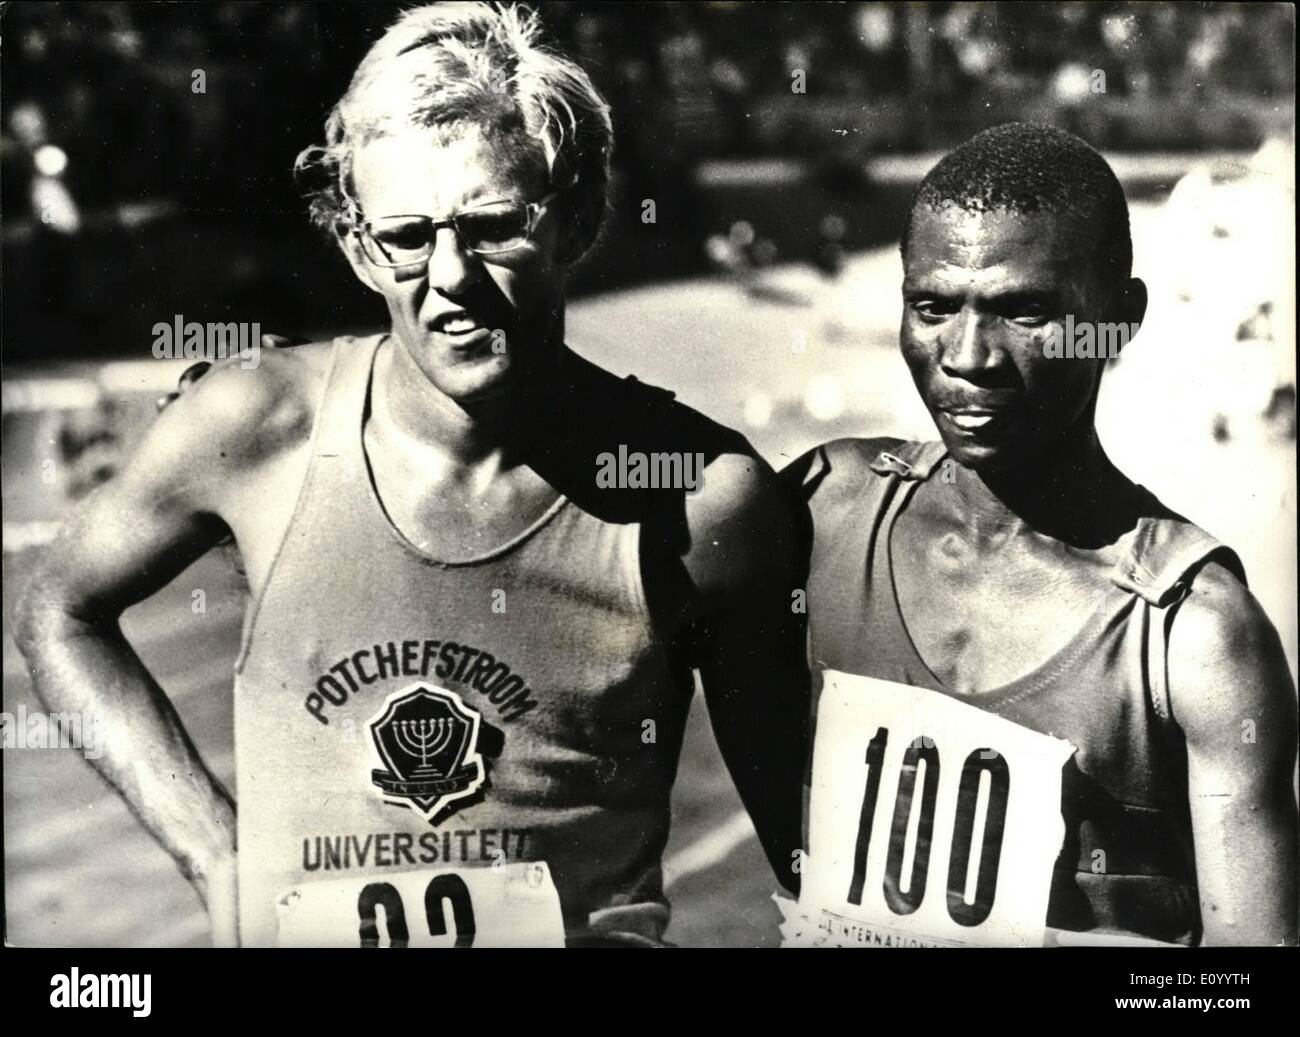 12 déc., 1971 - noir et blanc atheltes en Afrique du Sud la première réunion nationale d'athlétisme.'' en photo ensemble après la course de 10 000 mètres, qui s'est tenue récemment à Cape Town Afrique du Sud au cours de la première réunion nationale d'athlétisme, sont Andries Krogman (à gauche), le gagnant et Johannes Metsing qui a terminé deuxième de l'Afrique du Sud. Banque D'Images